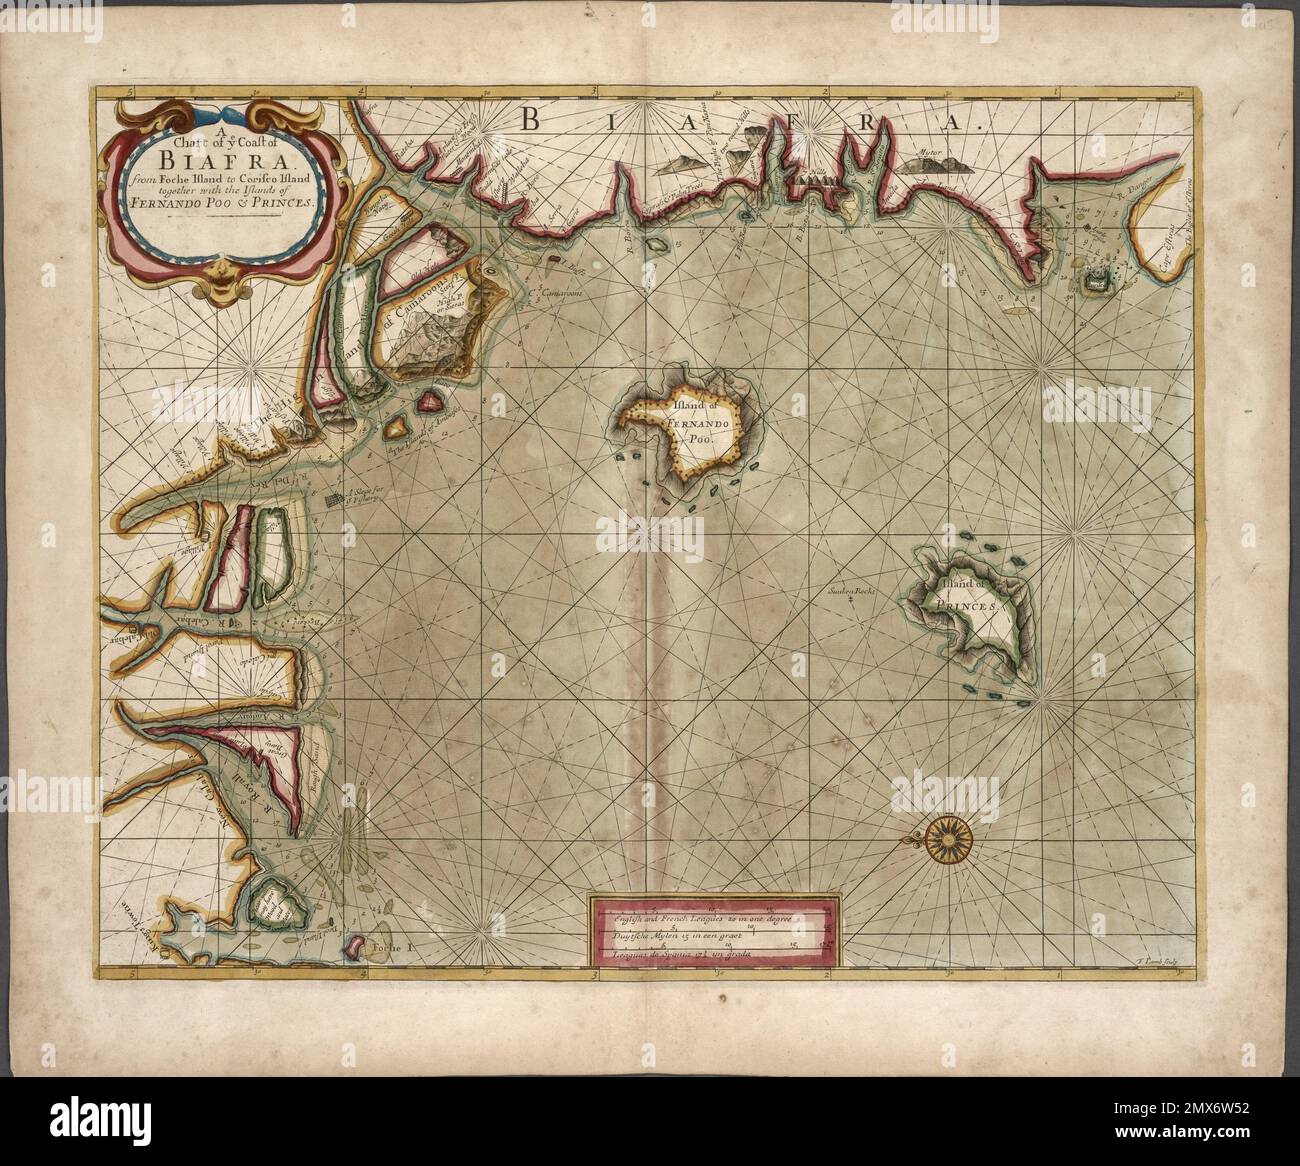 Eine Karte der Küste VON BIAFRA von Foche Island bis Corisco Island zusammen mit den Inseln FERNANDO POO und PRINZEN. Thornton, Samuel Stockfoto